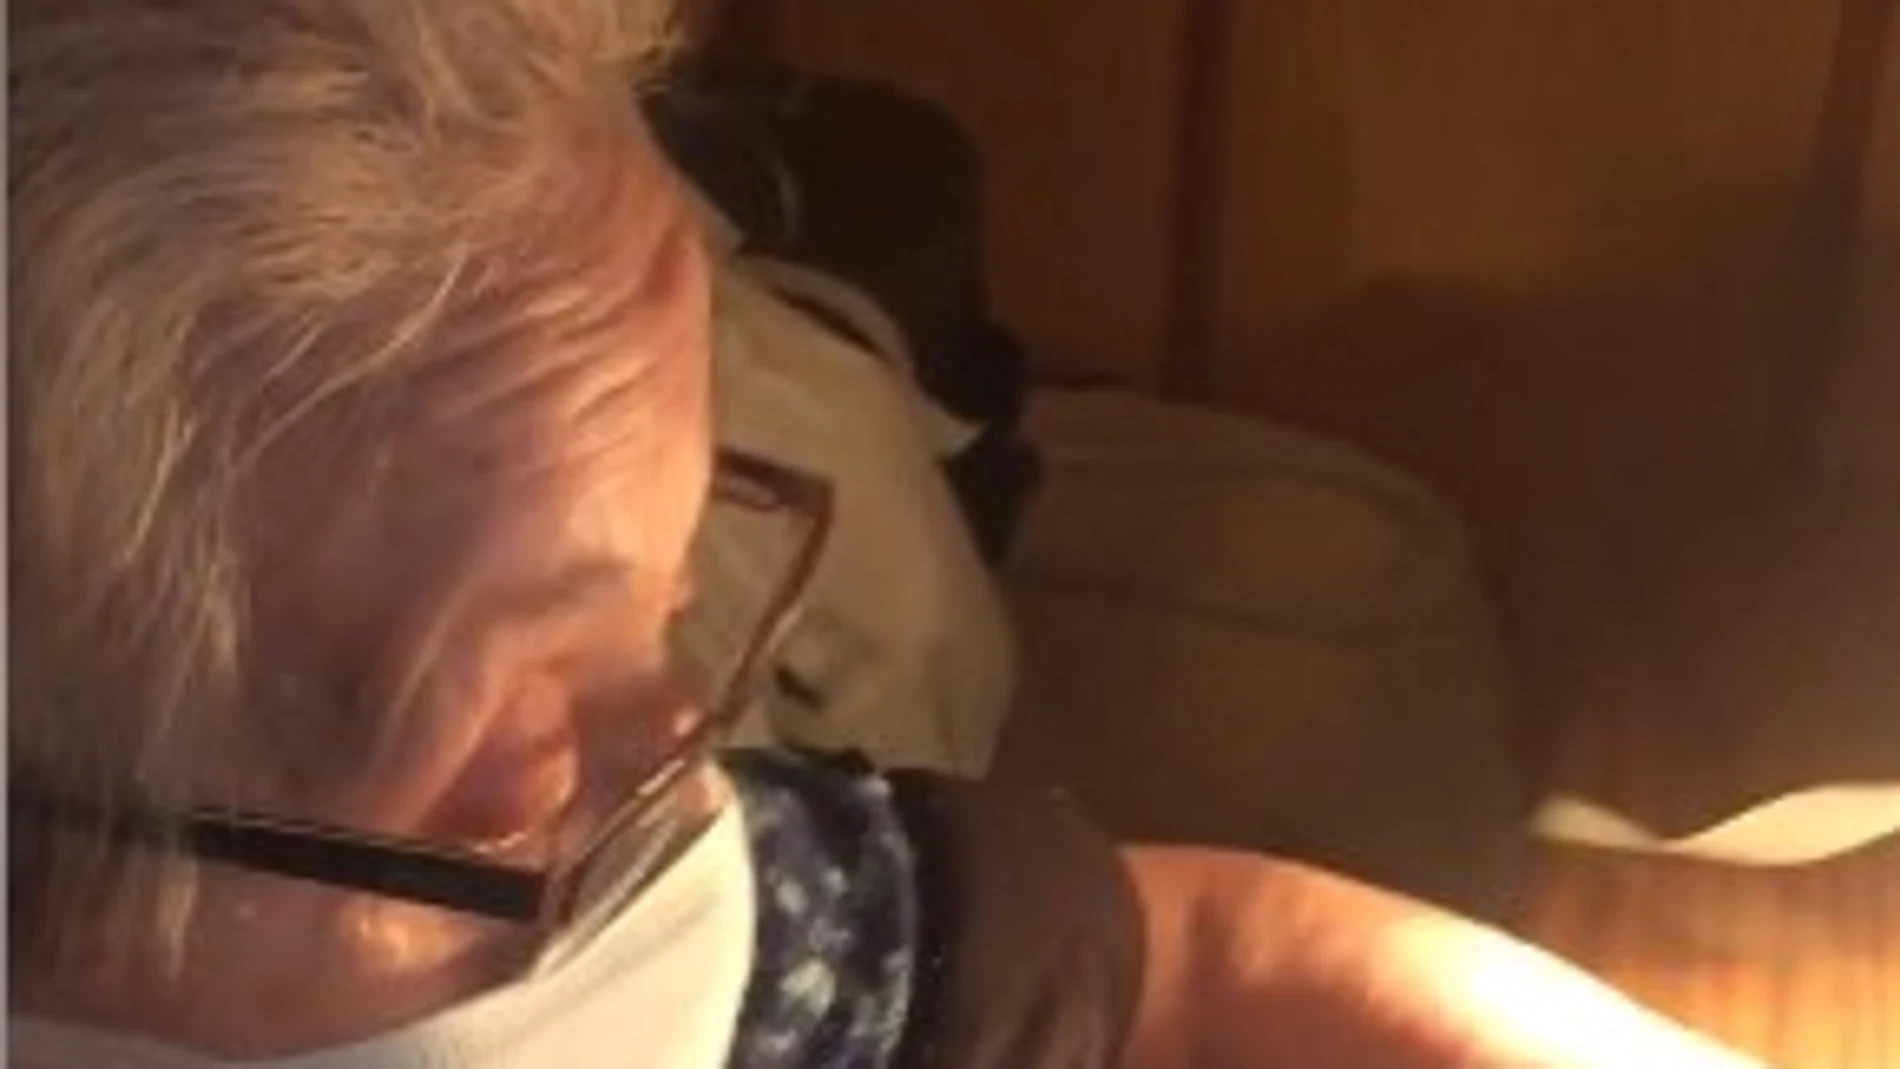 Una mujer de 88 años cose mascarillas, pese a tener parkinson